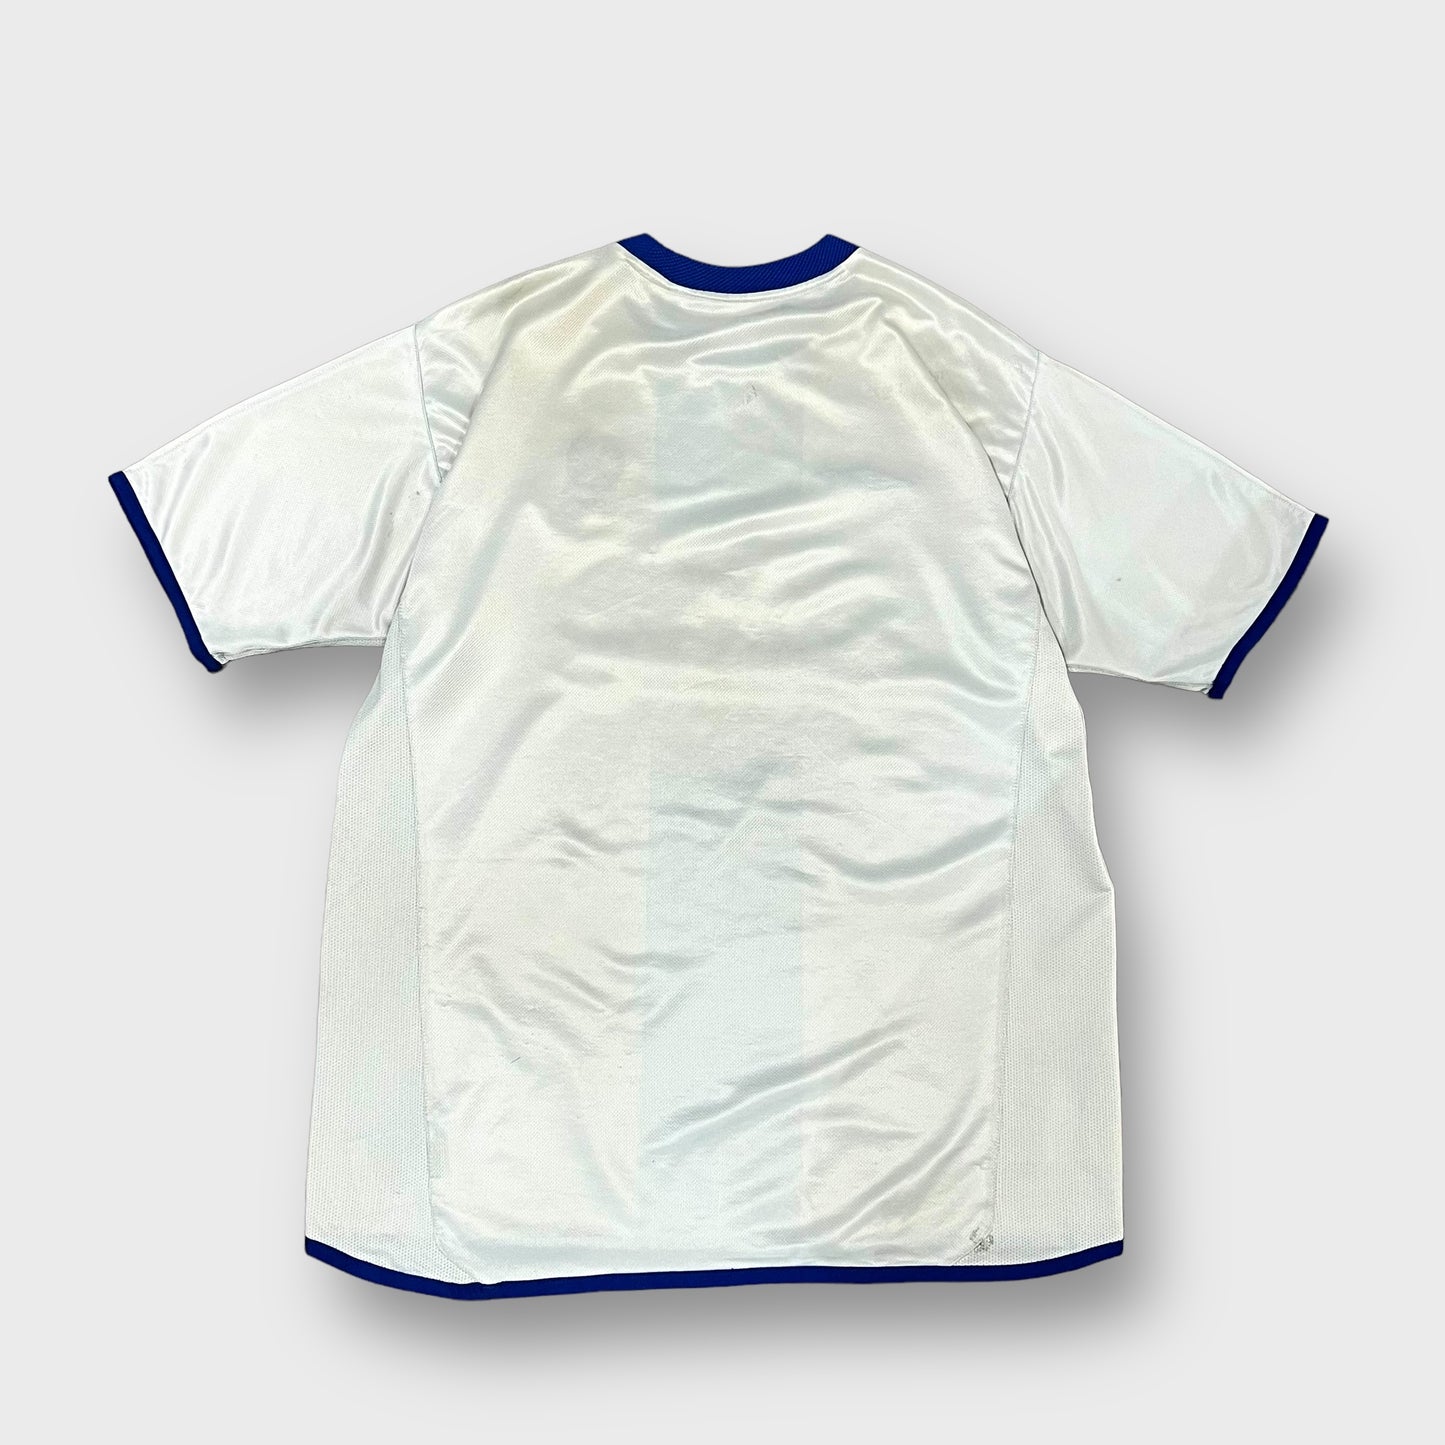 00’s umbro“chelsea”soccer shirt